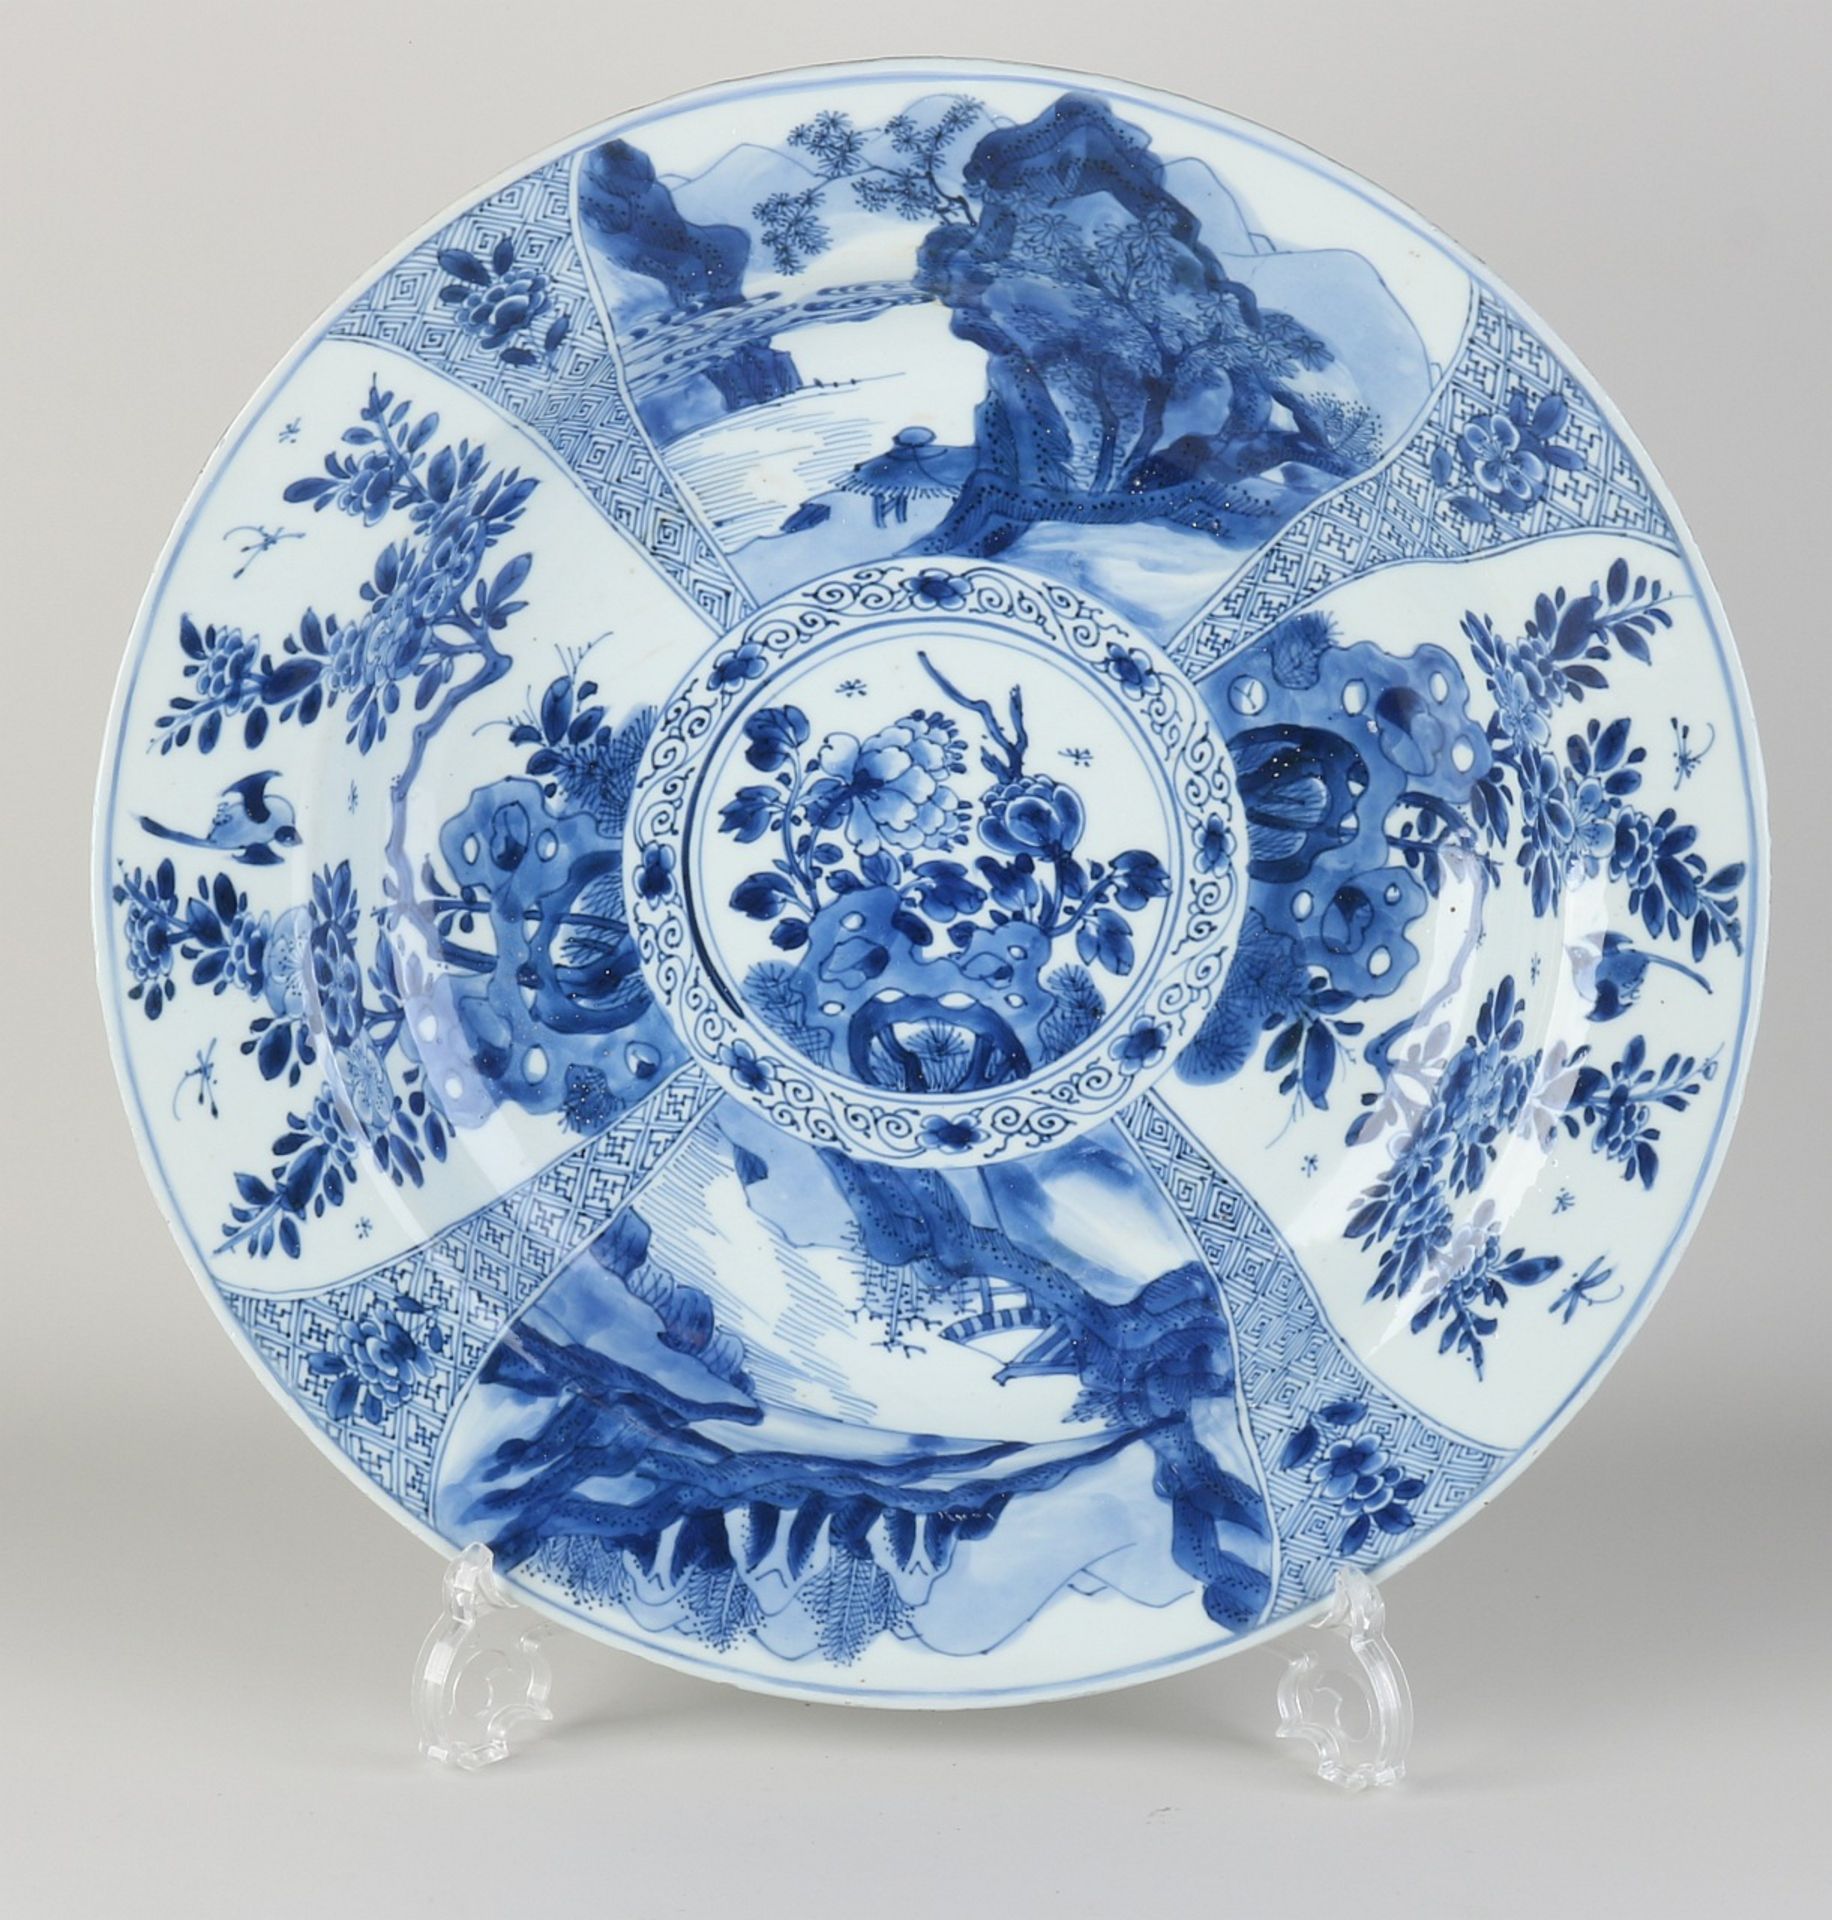 17th-18th century Chinese Kang Xi dish, Ø 38 cm.